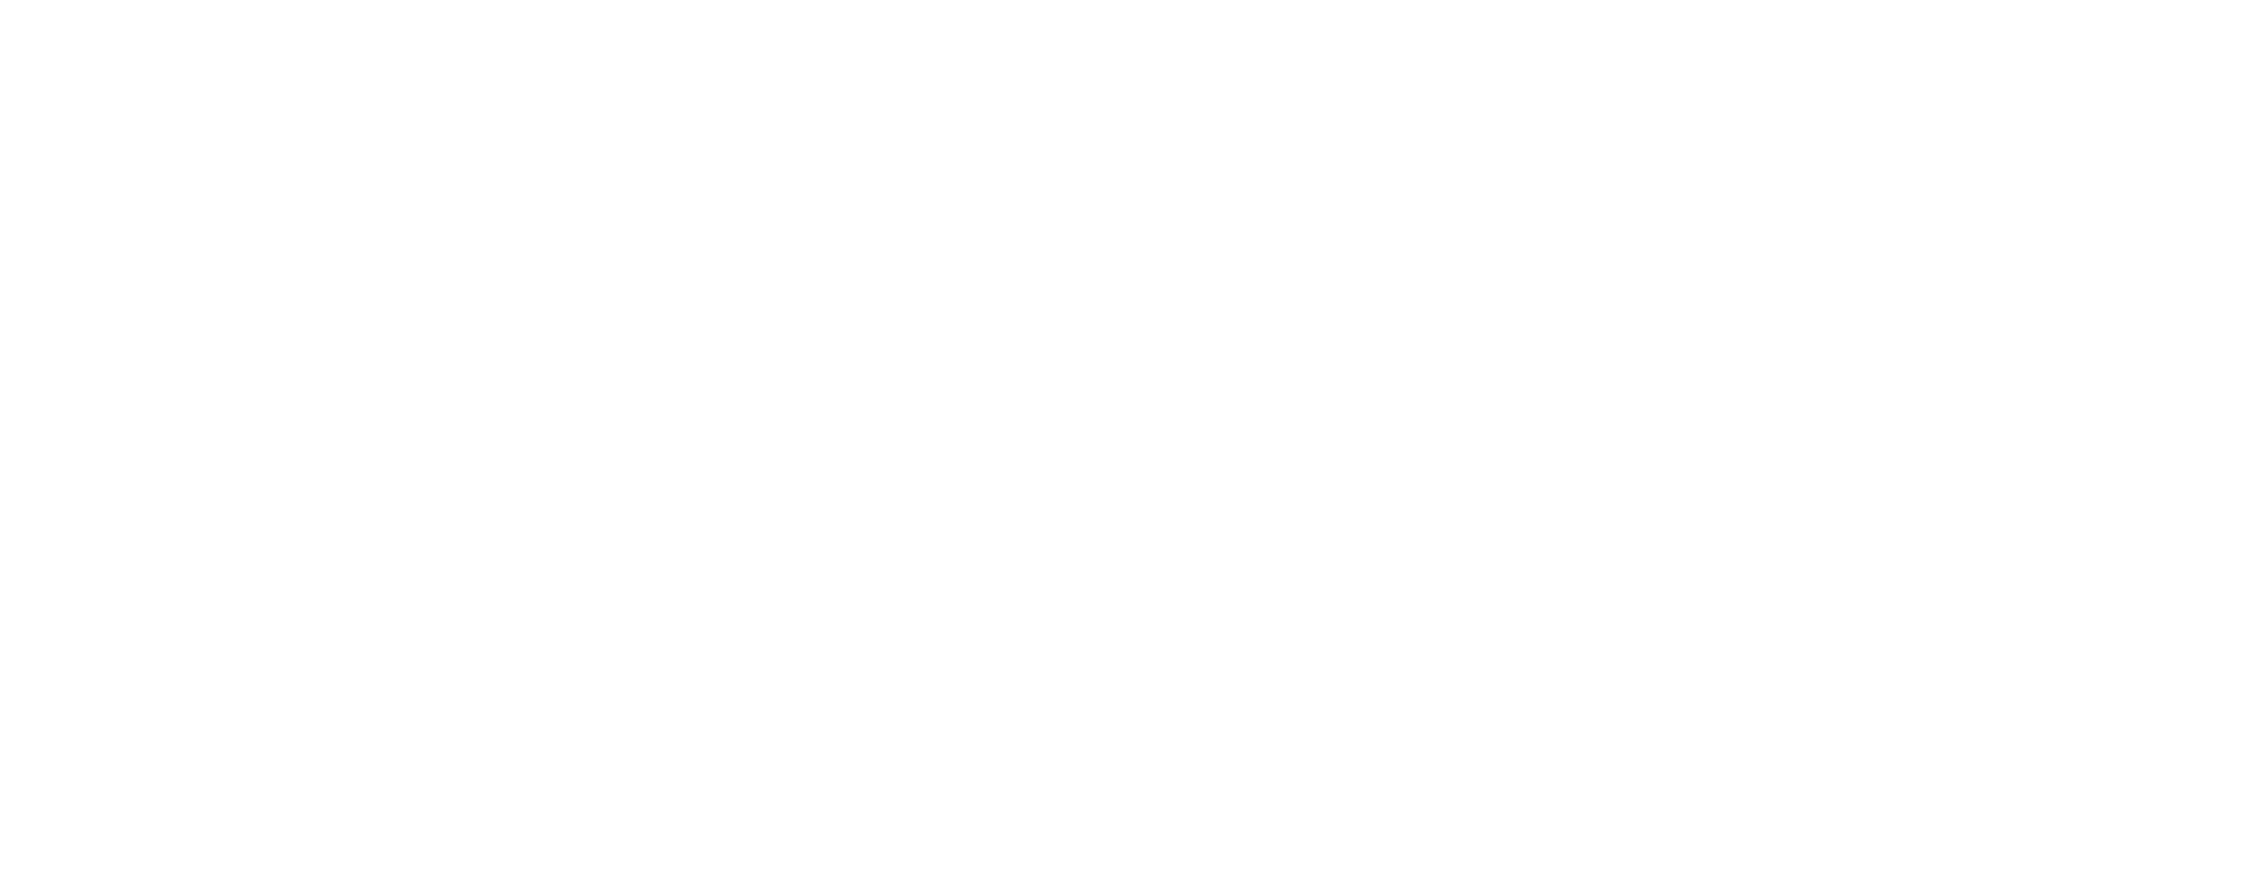 Samsung meanestmonster